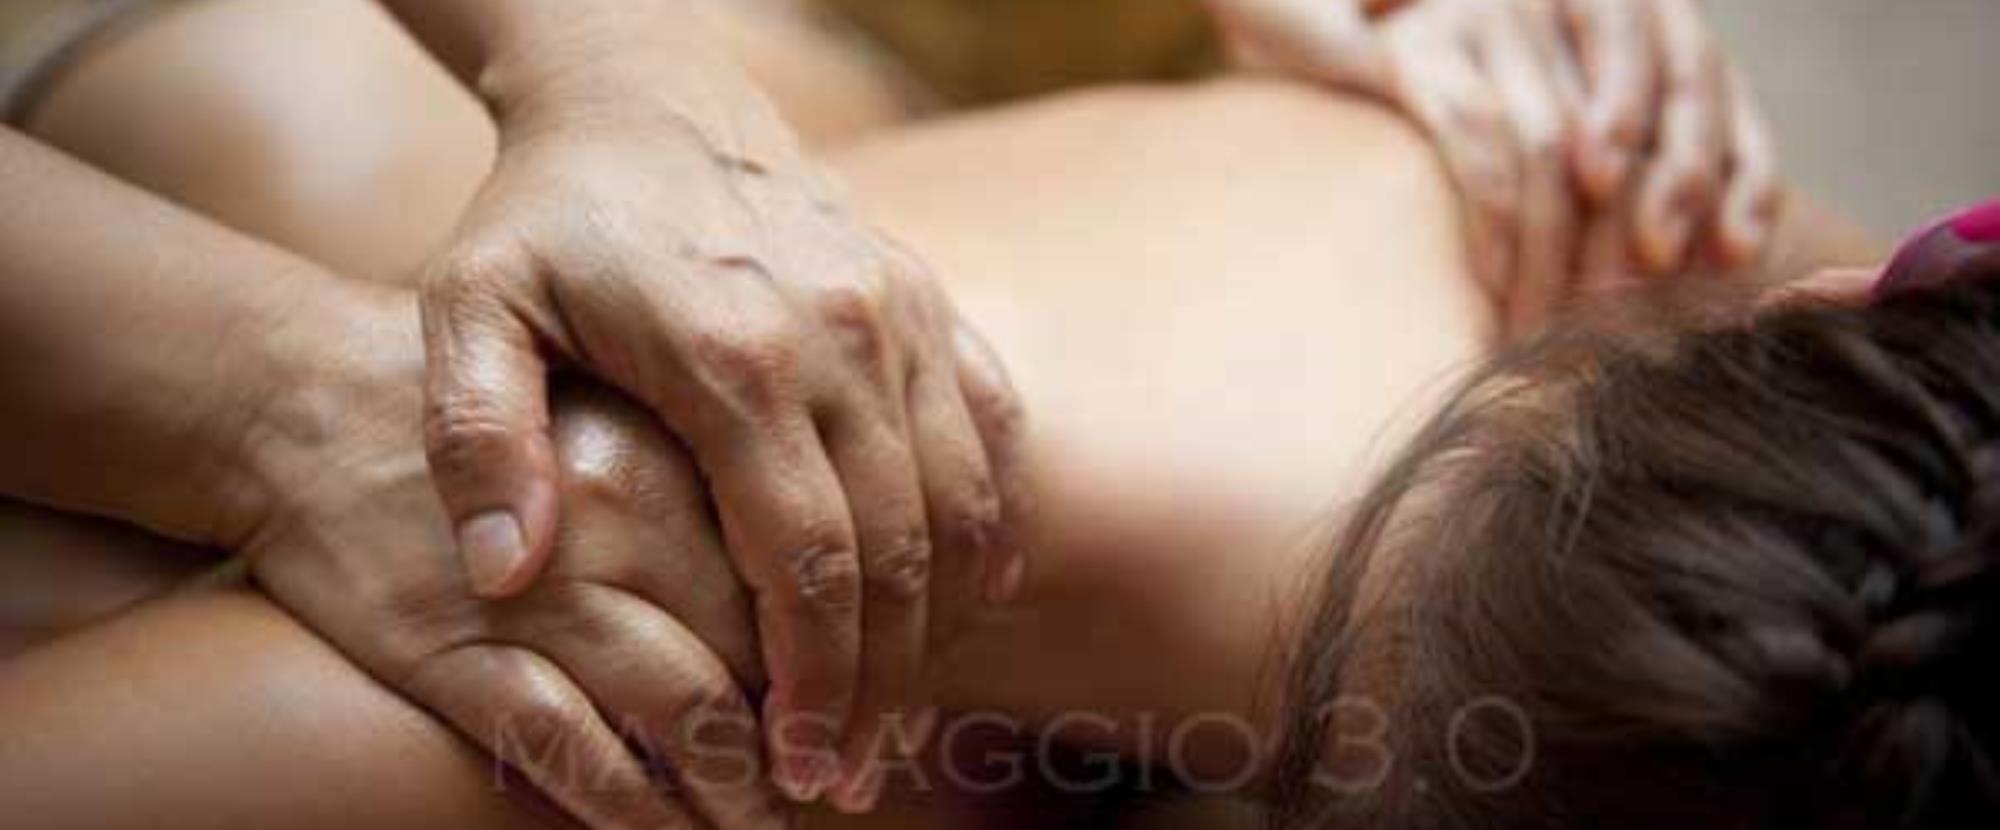 massaggio yoni